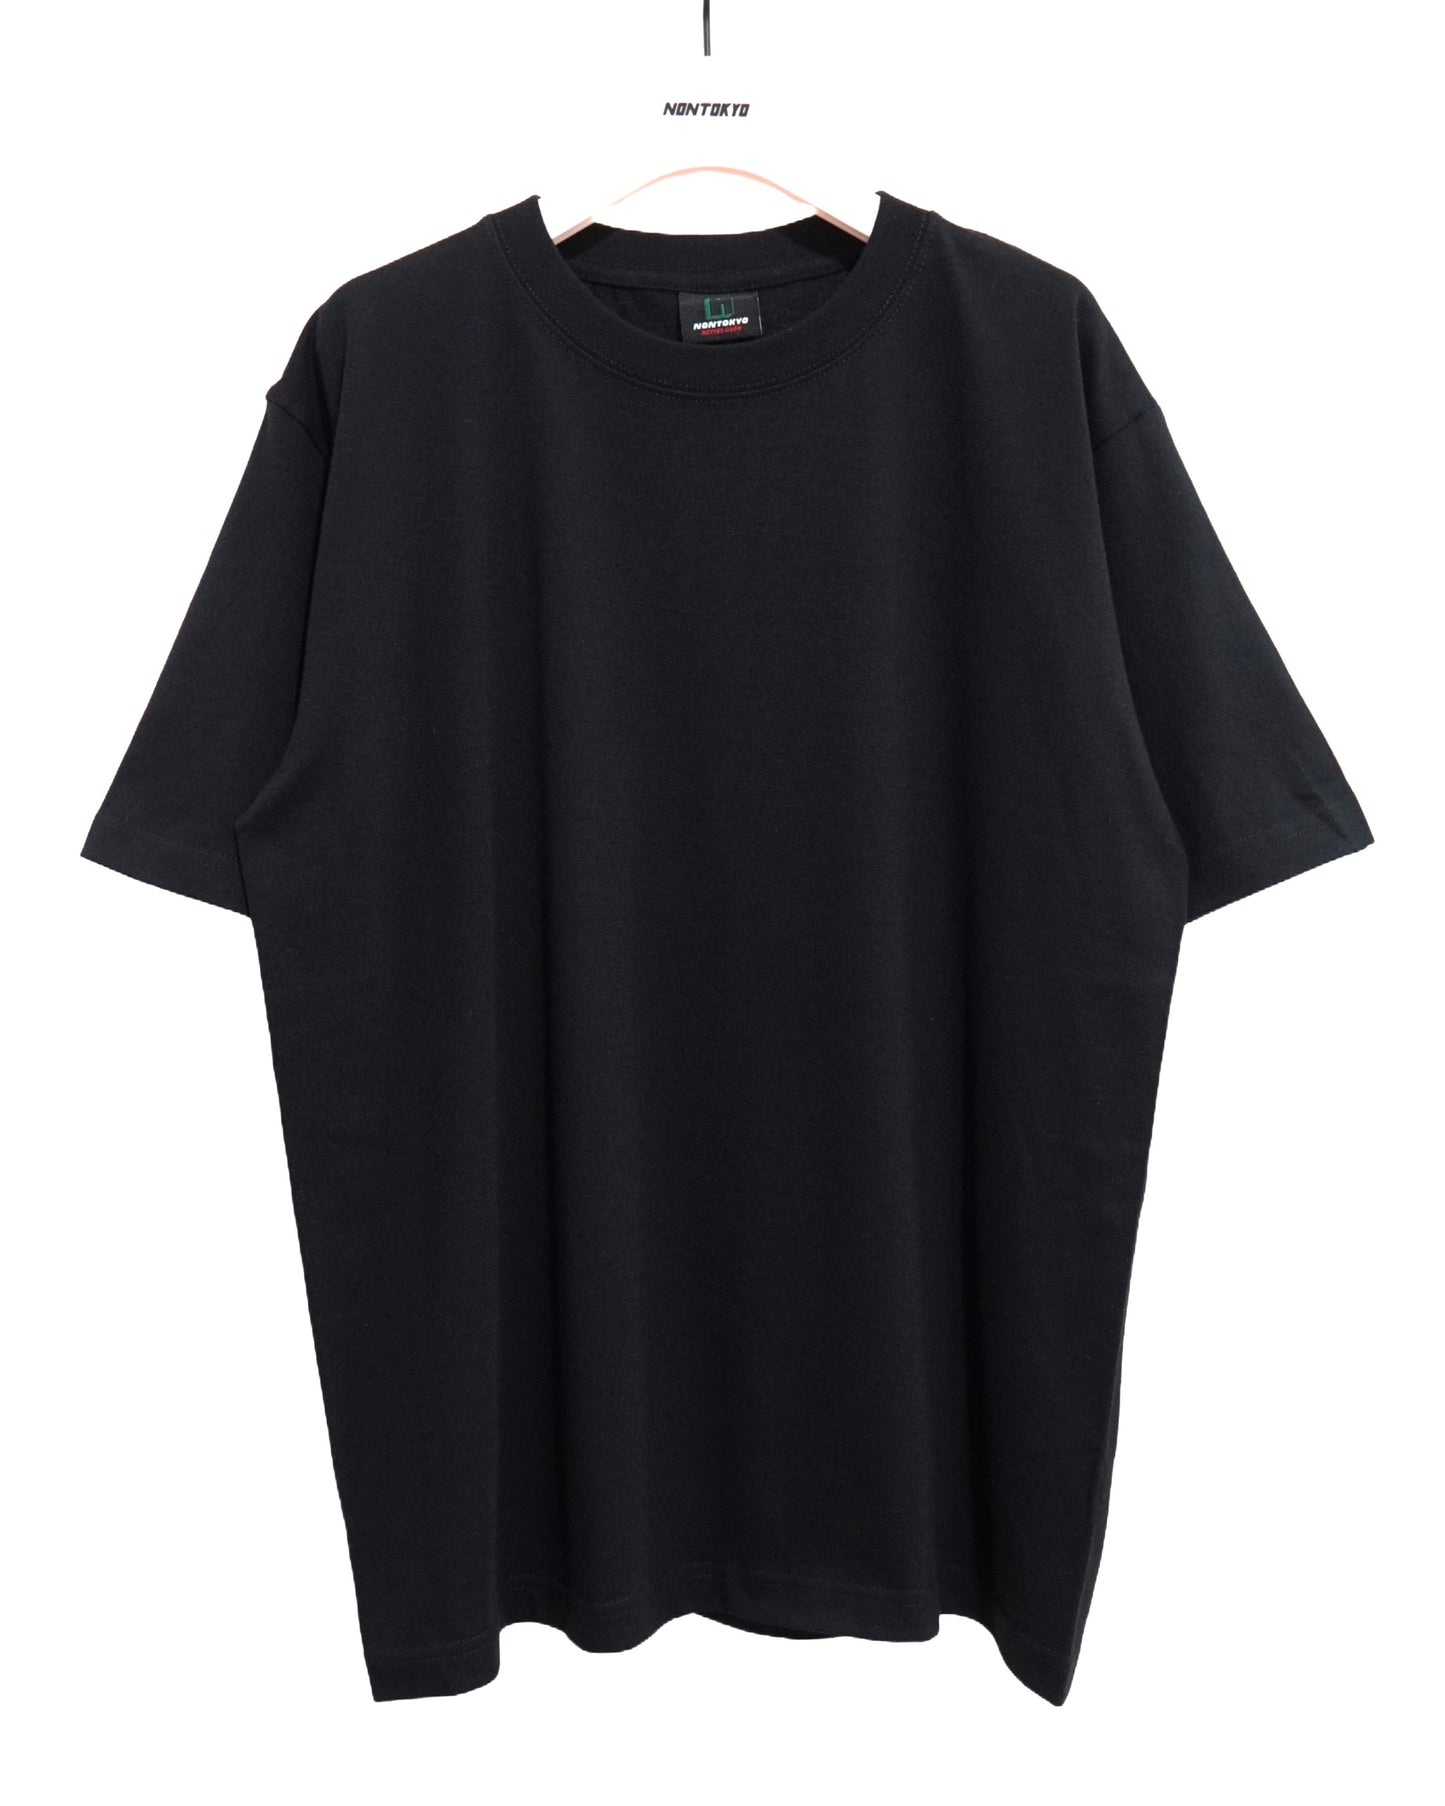 NON TOKYO /  PRINT T-SHIRT (PANSY / BLACK) / 〈ノントーキョー〉プリントTシャツ (パンジー / ブラック)